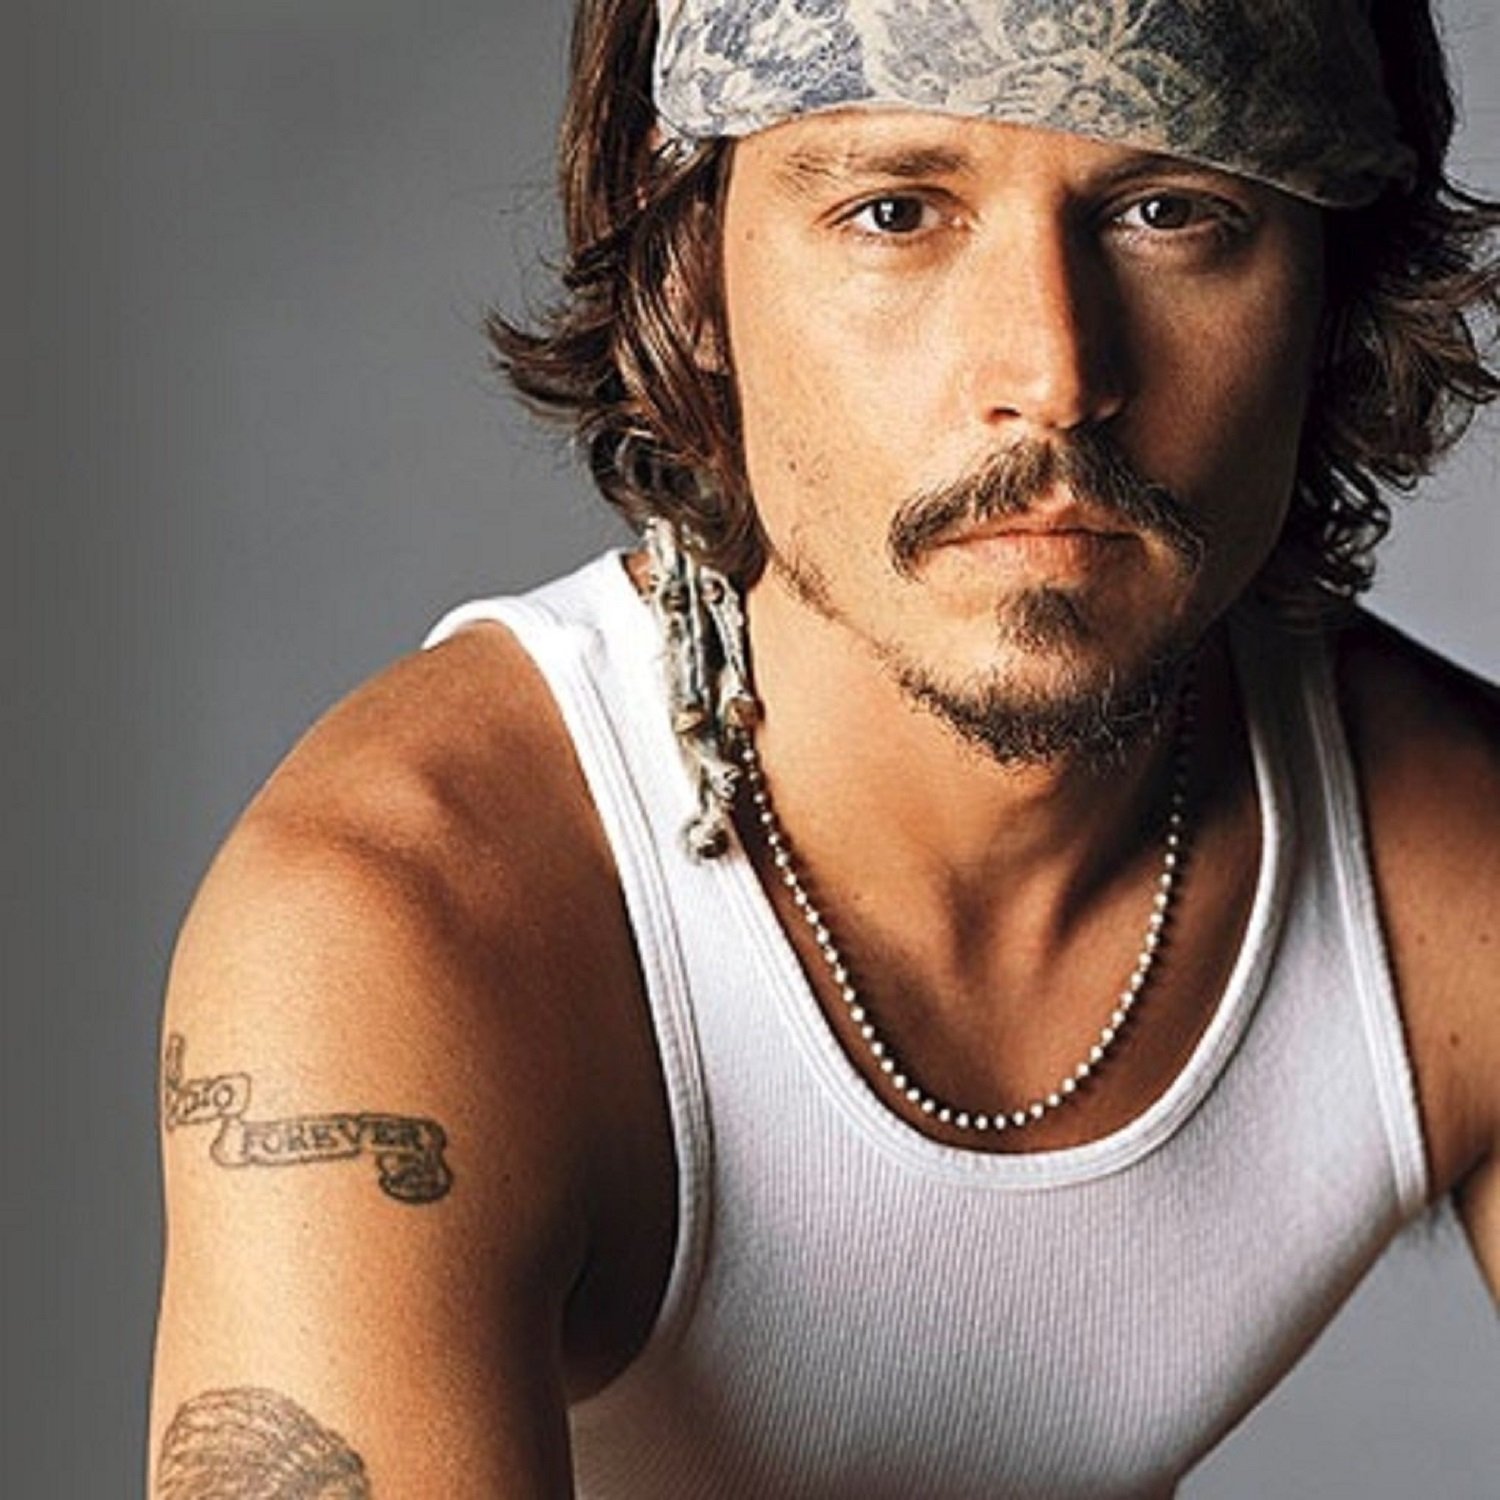 Si et trobes Johnny Depp passejant pel barri de Gràcia, sí, és ell